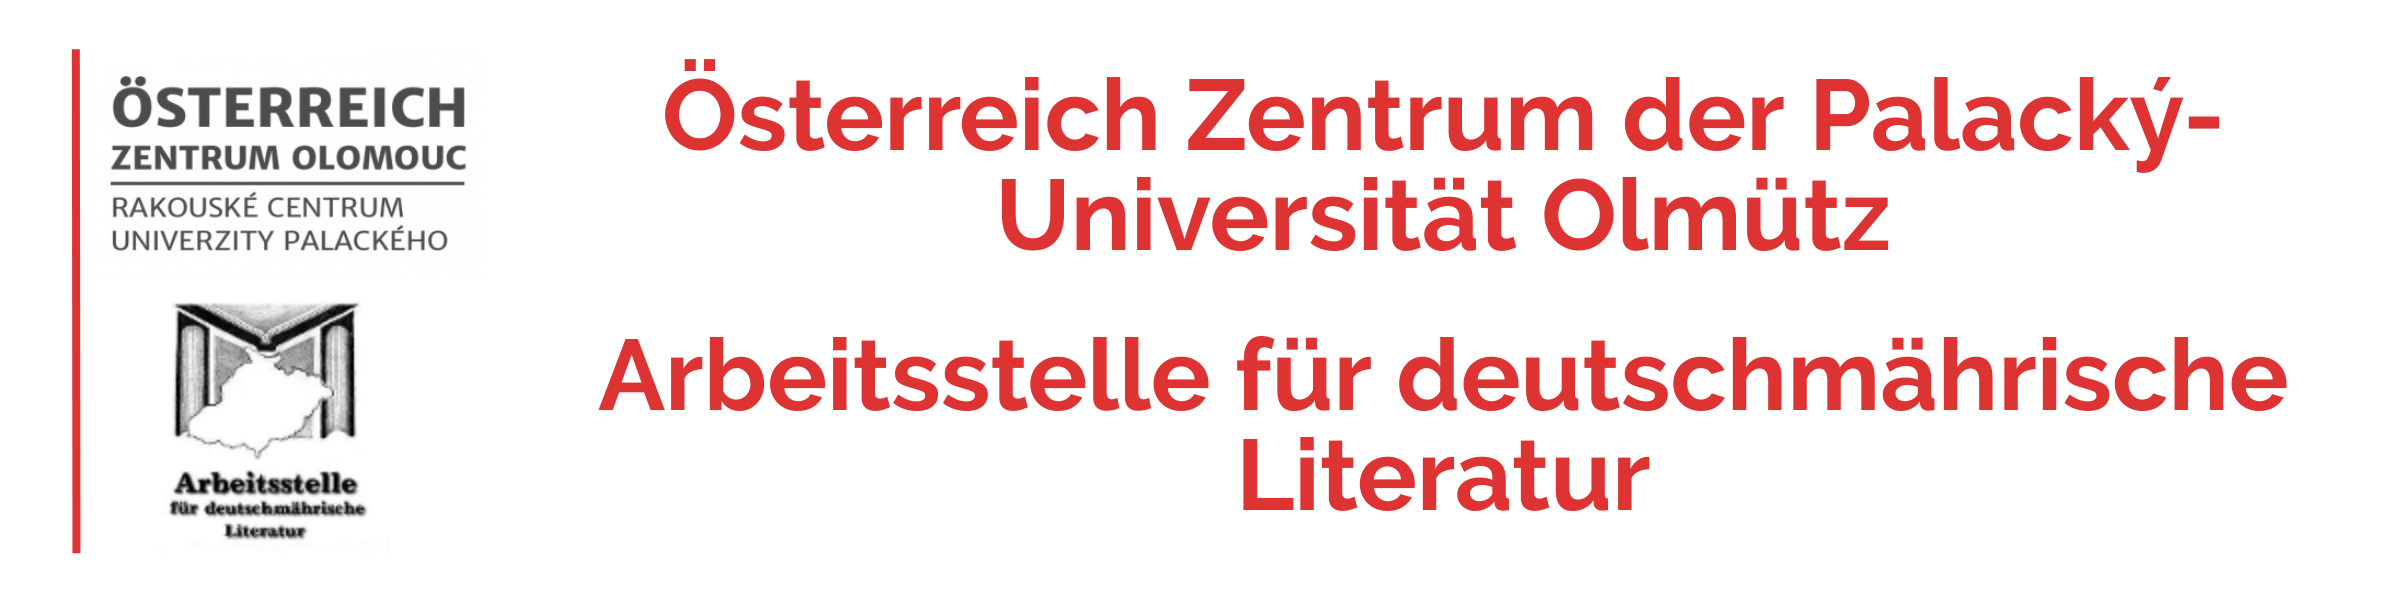 Österreich Zentrum der Palacký-Universität Olmütz | Arbeitsstelle für deutschmährische Literatur